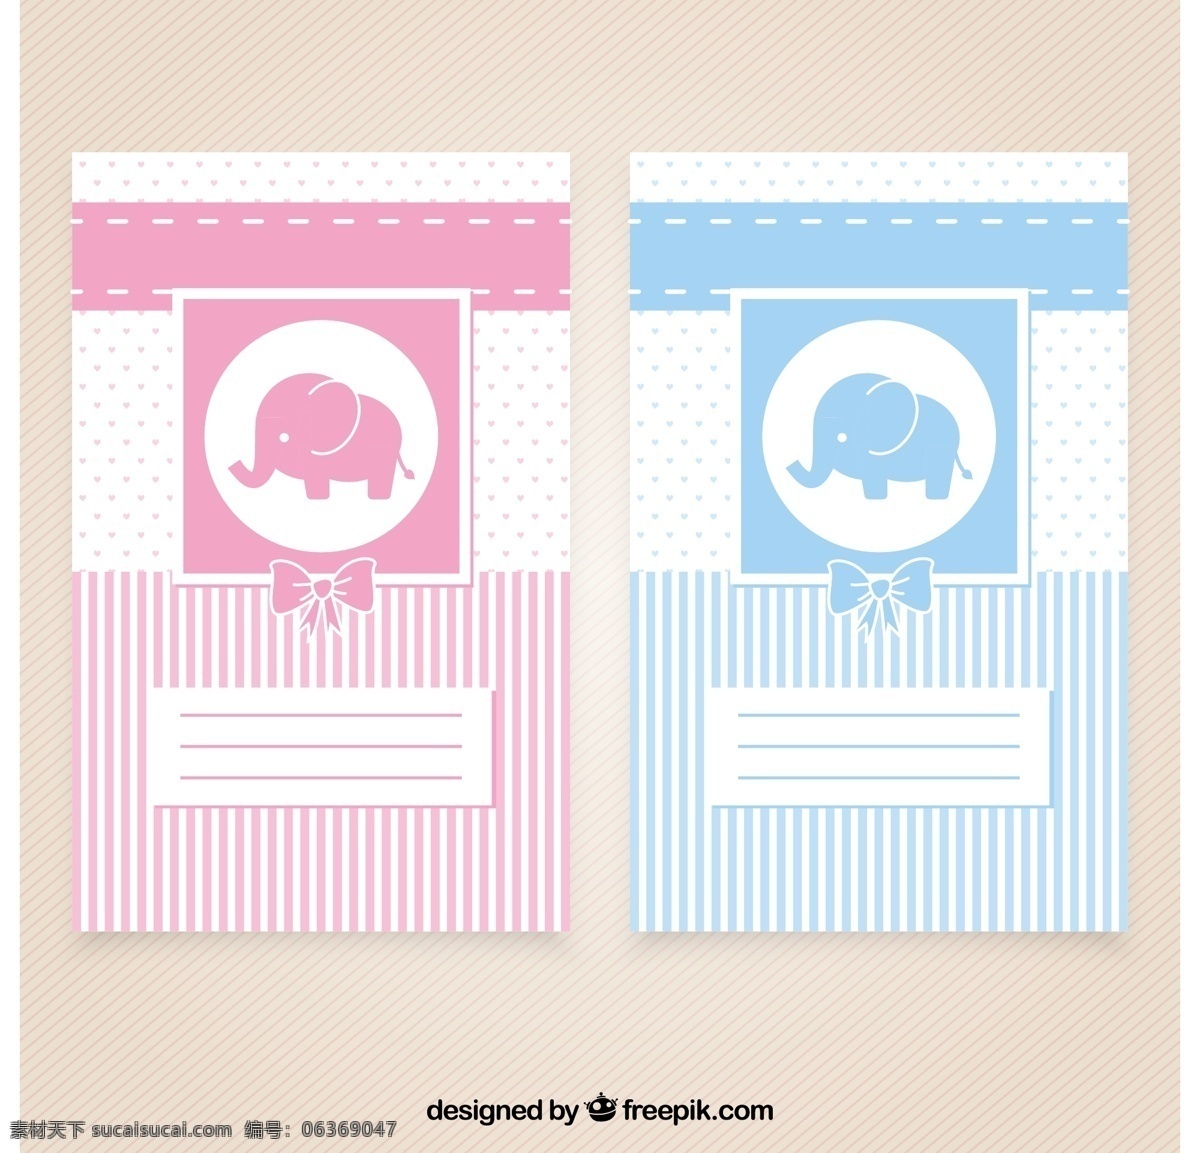 漂亮 婴儿 淋浴 卡 派对 邀请 卡片 婴儿淋浴 模板 蓝色 粉红色 大象 孩子 庆祝 新 男孩 邀请卡 宝贝男孩 公告 可爱 派对邀请 白色